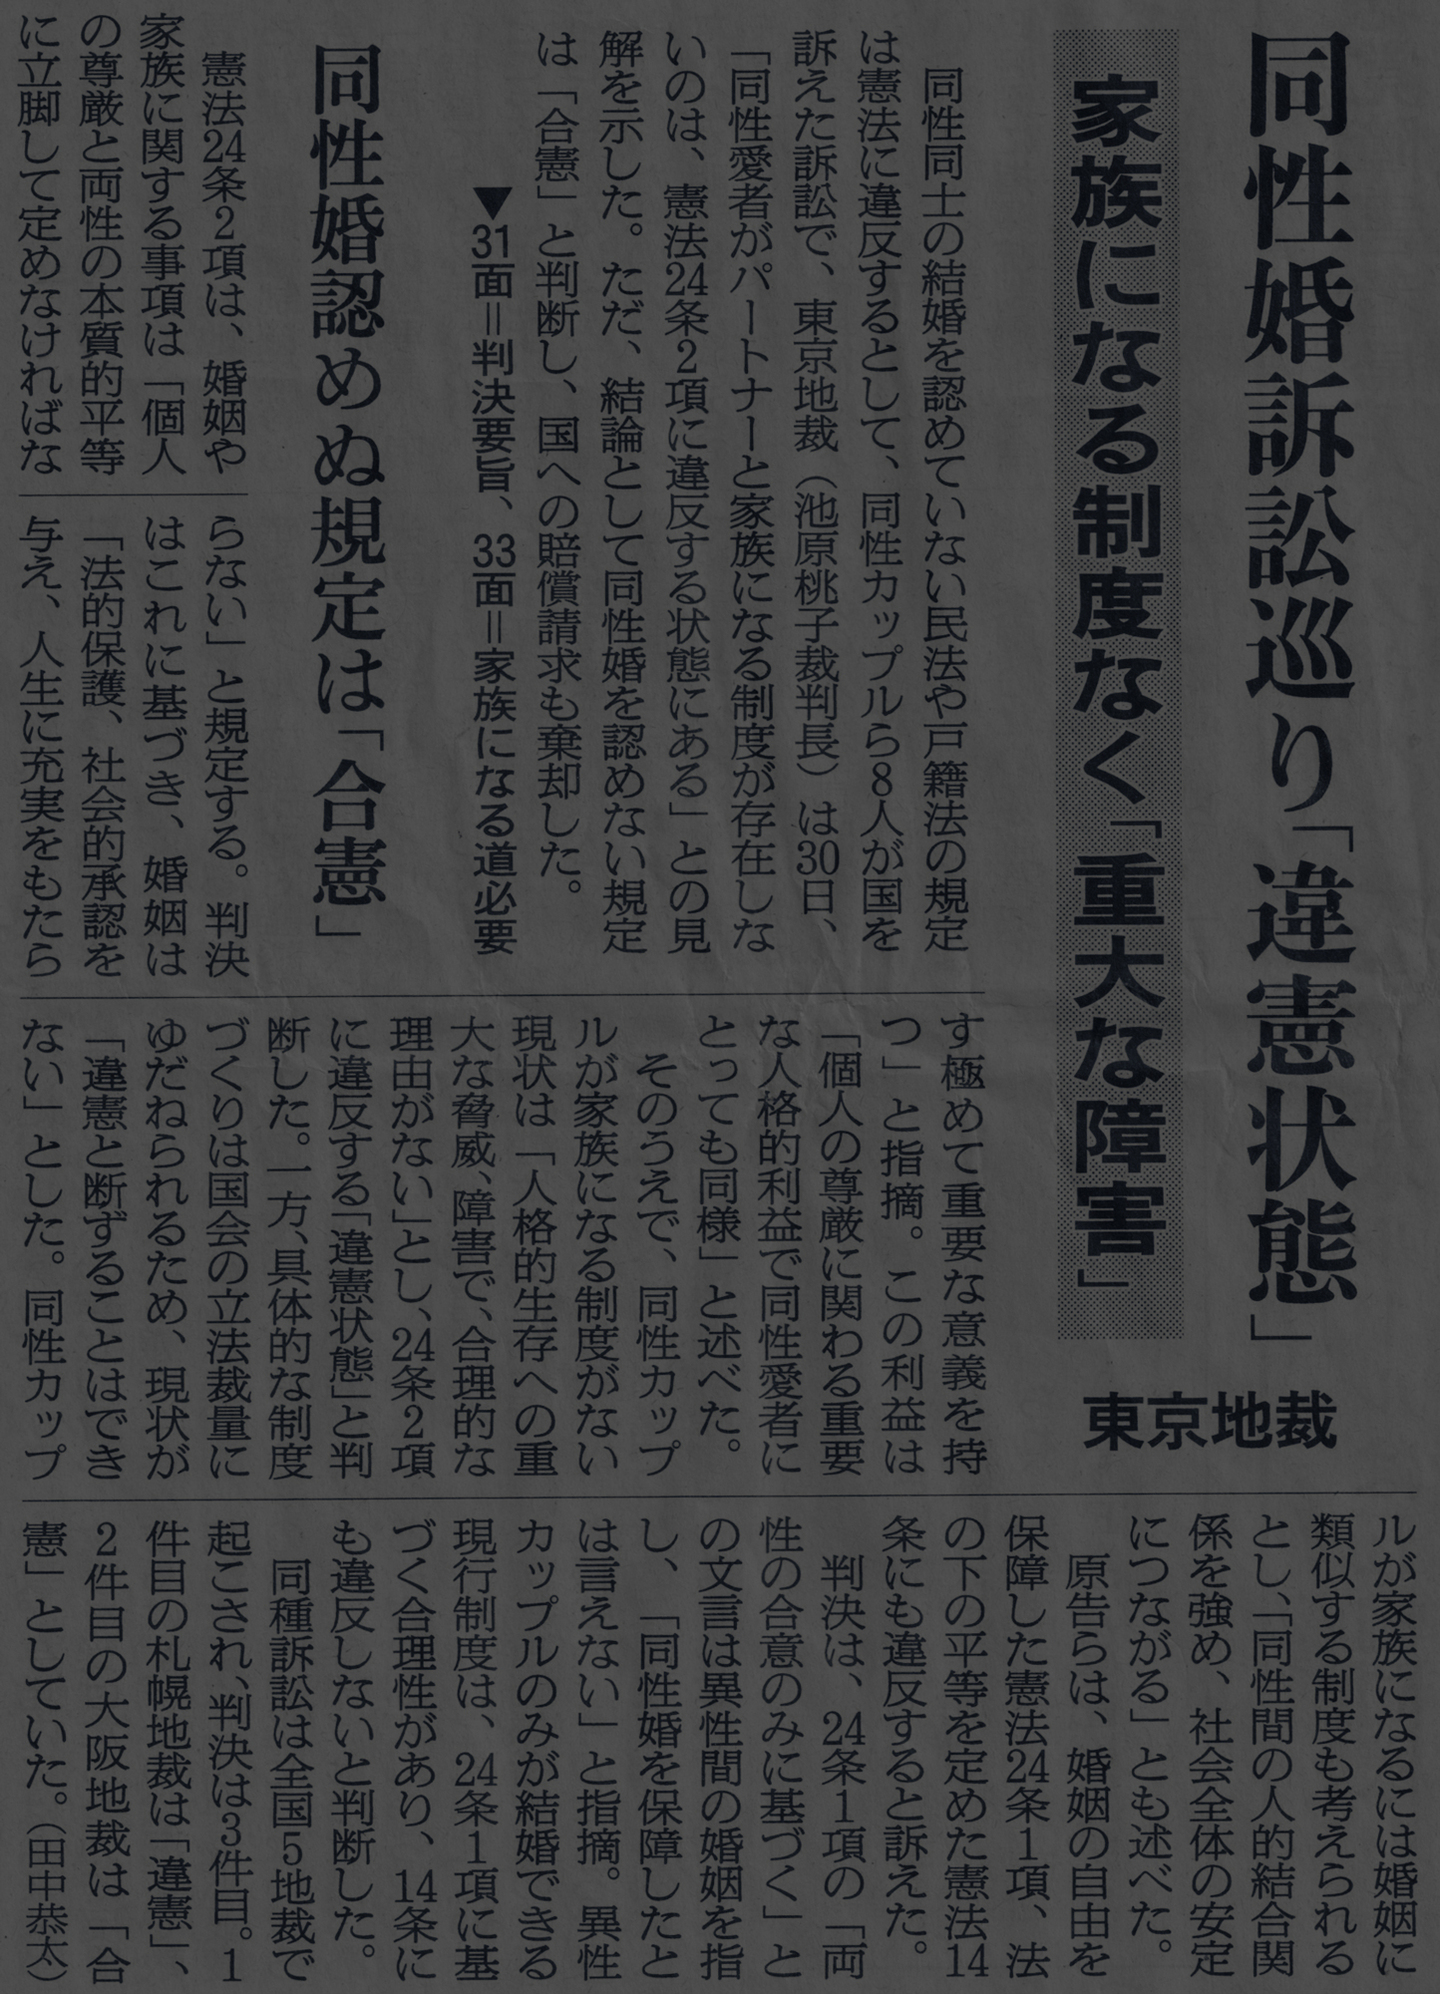 同性婚訴訟の東京地裁判決